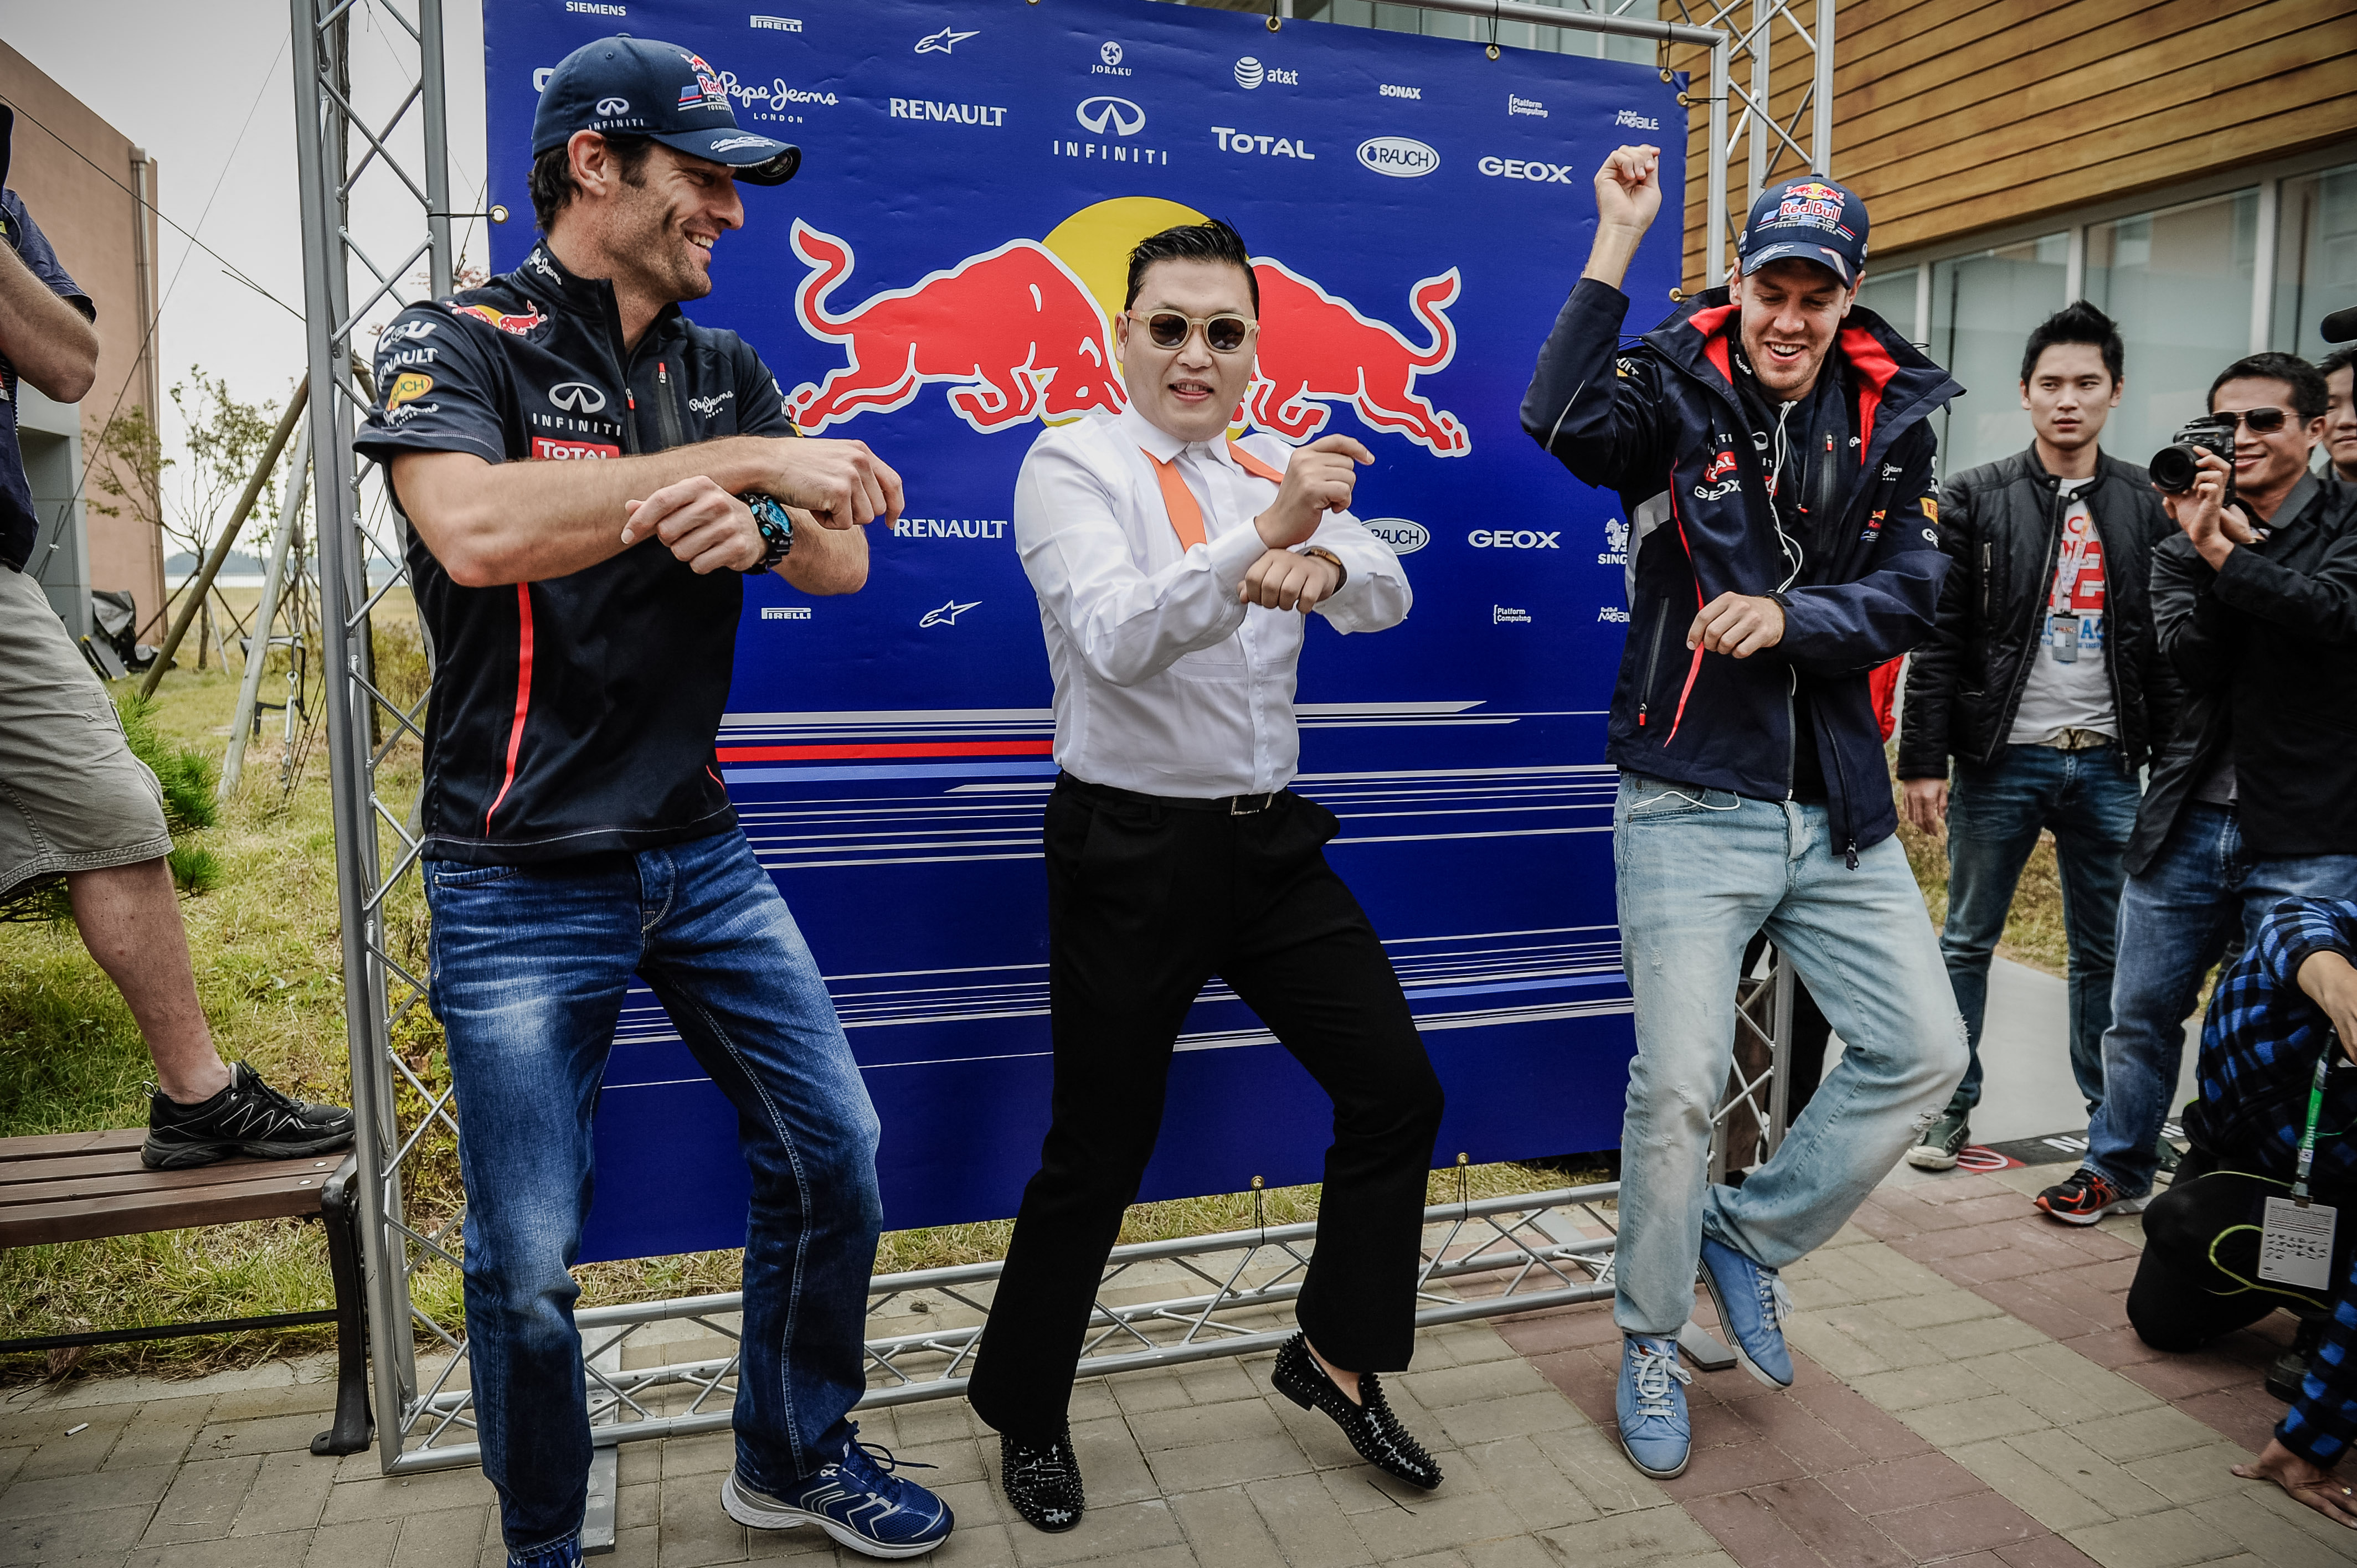 Um Aufmerksamkeit auf die Formel 1 zu lenken, besuchte K-Pop-Star Psy den Großen Preis von Korea